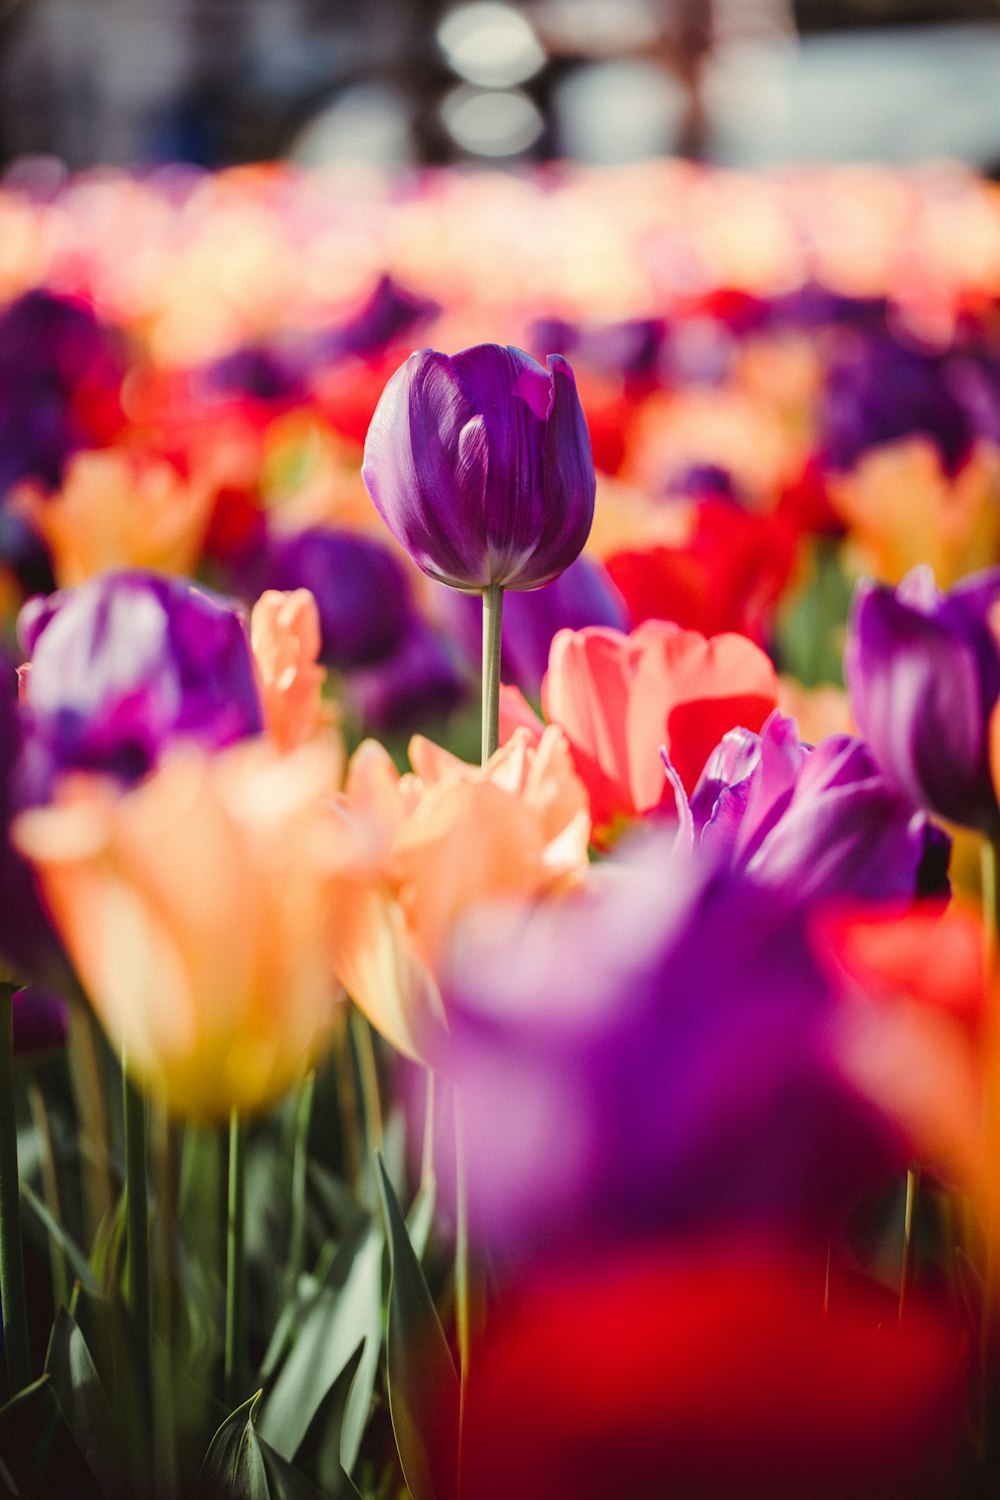 lit de tulipes violettes et roses